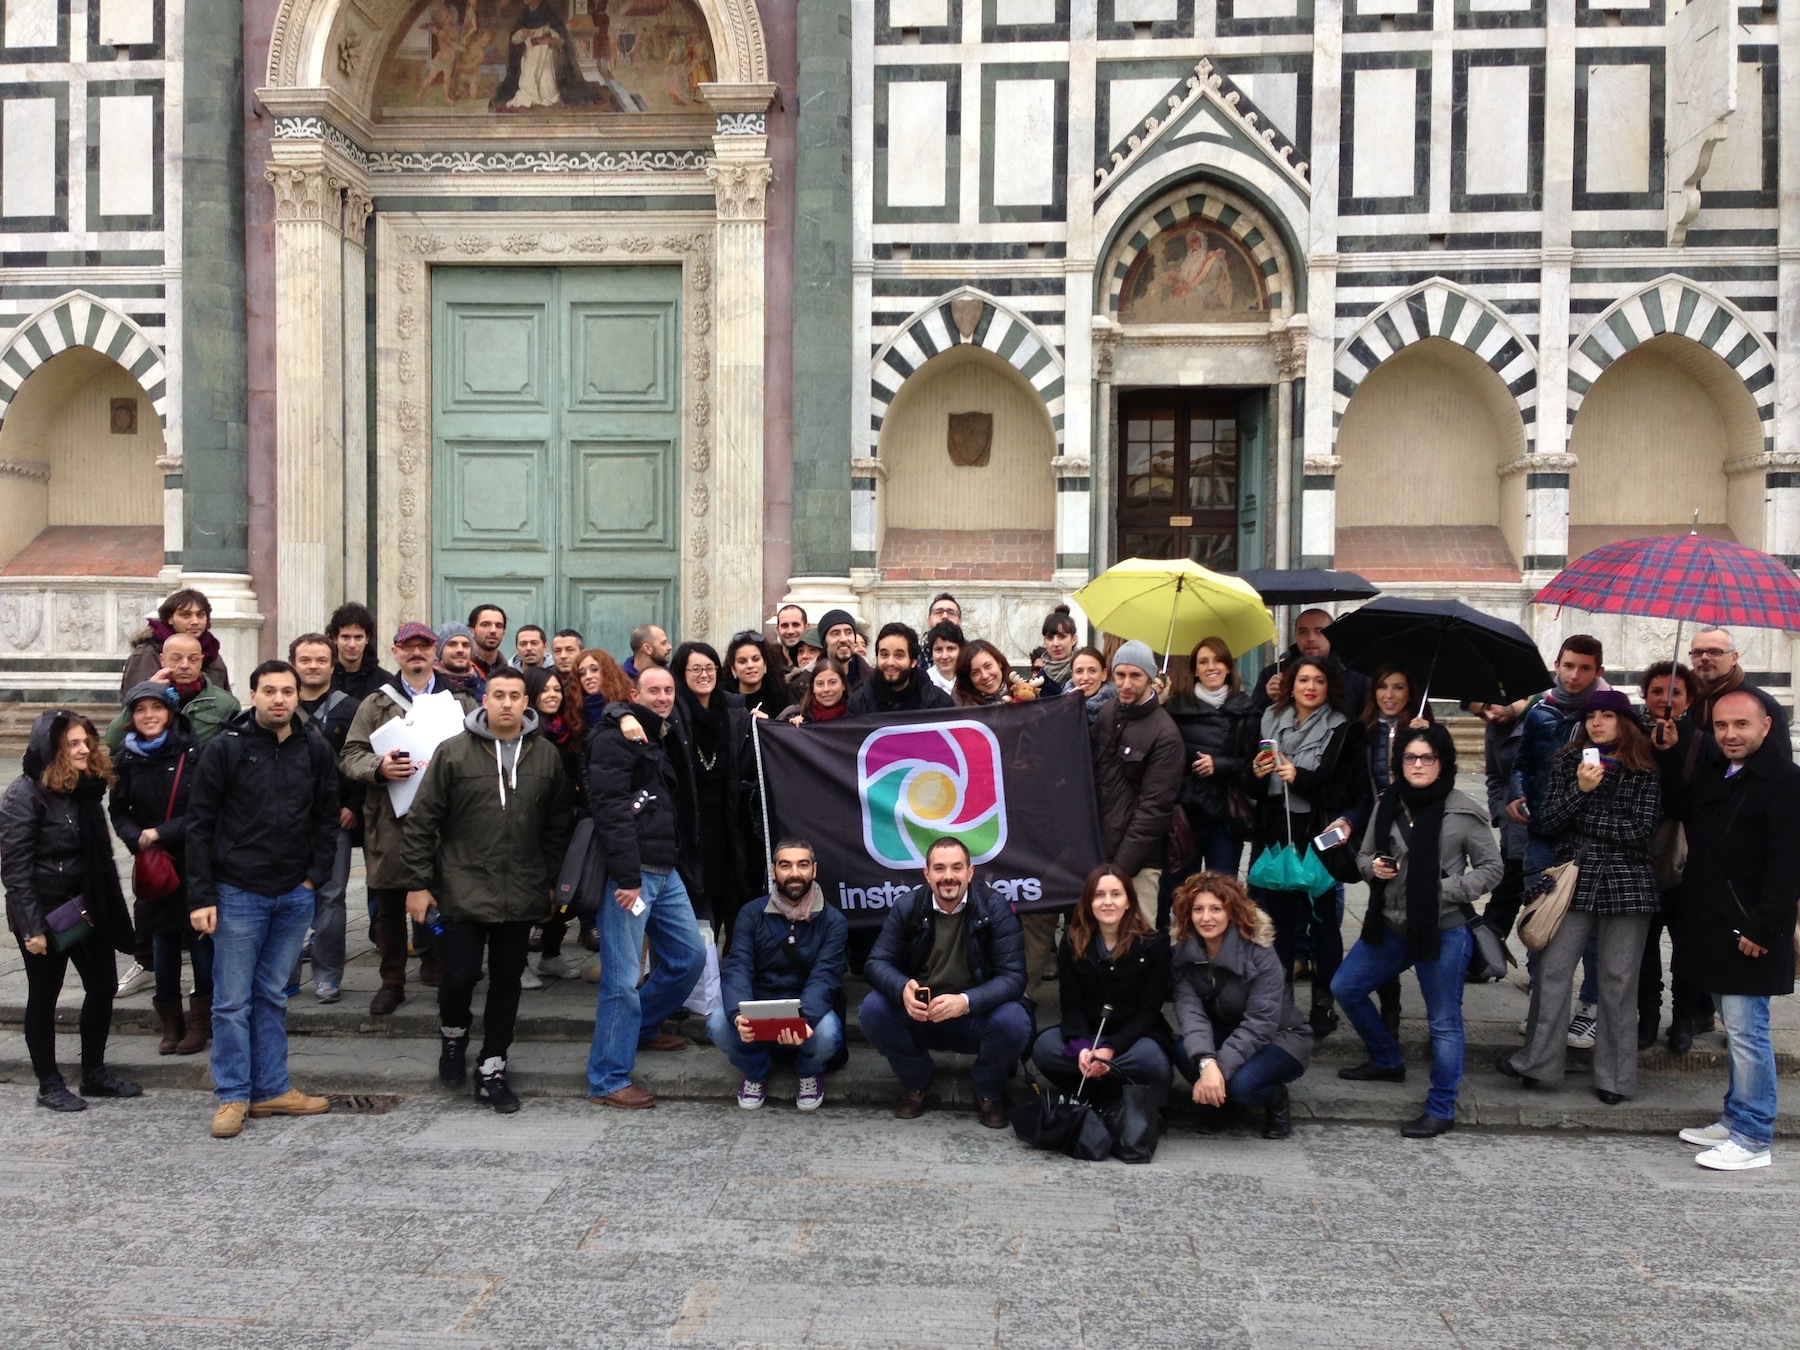 Gli igers si ritrovano a Firenze per fare foto con Instagram